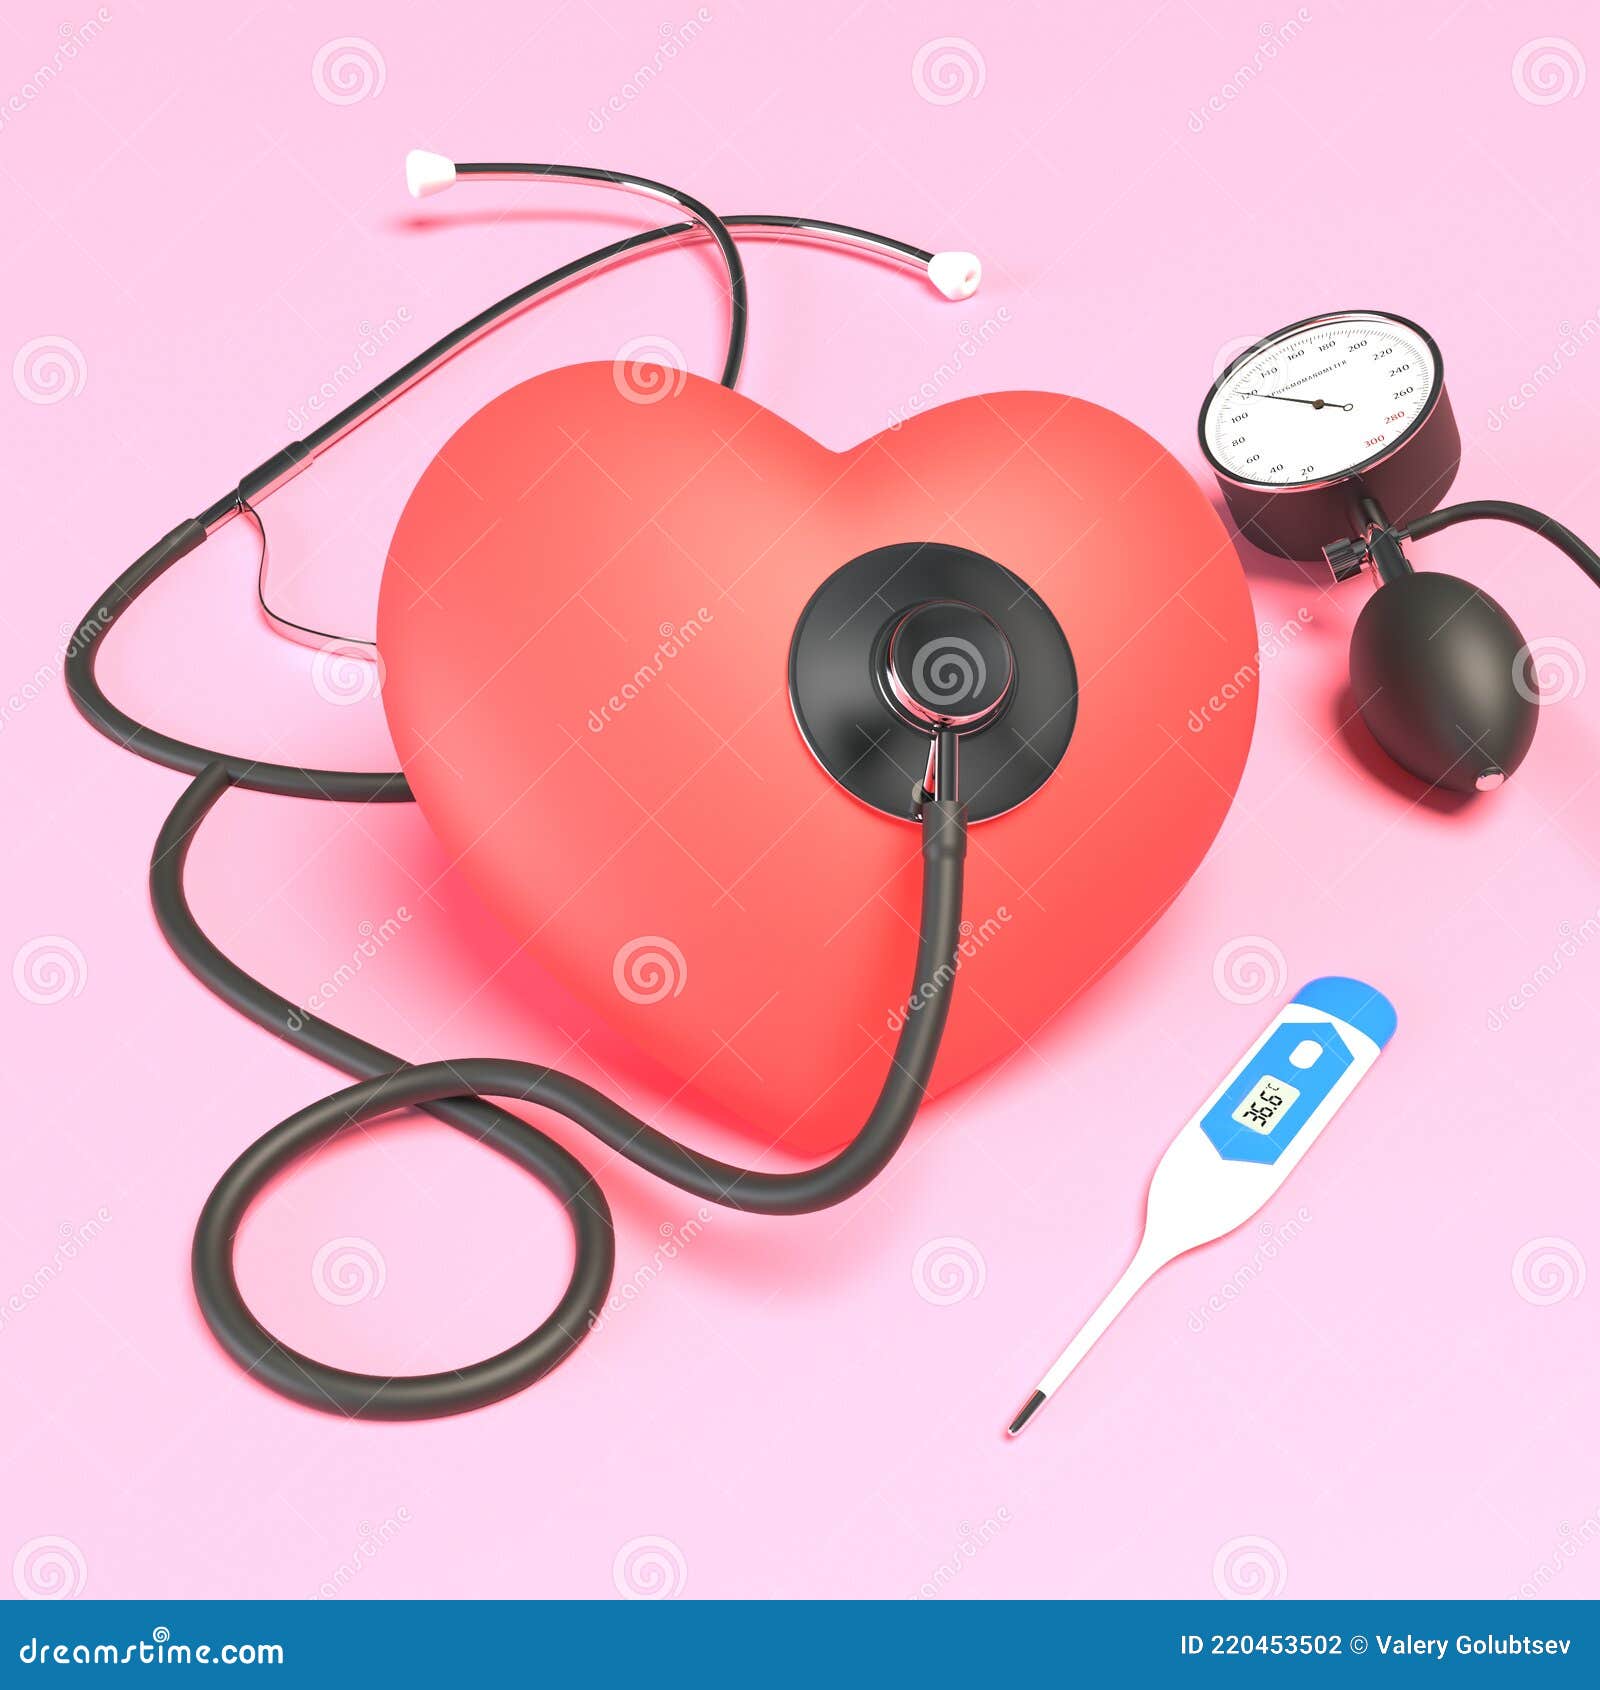 Estetoscopio Rosa Juguete Corazón Y Monitor De Presión Arterial En